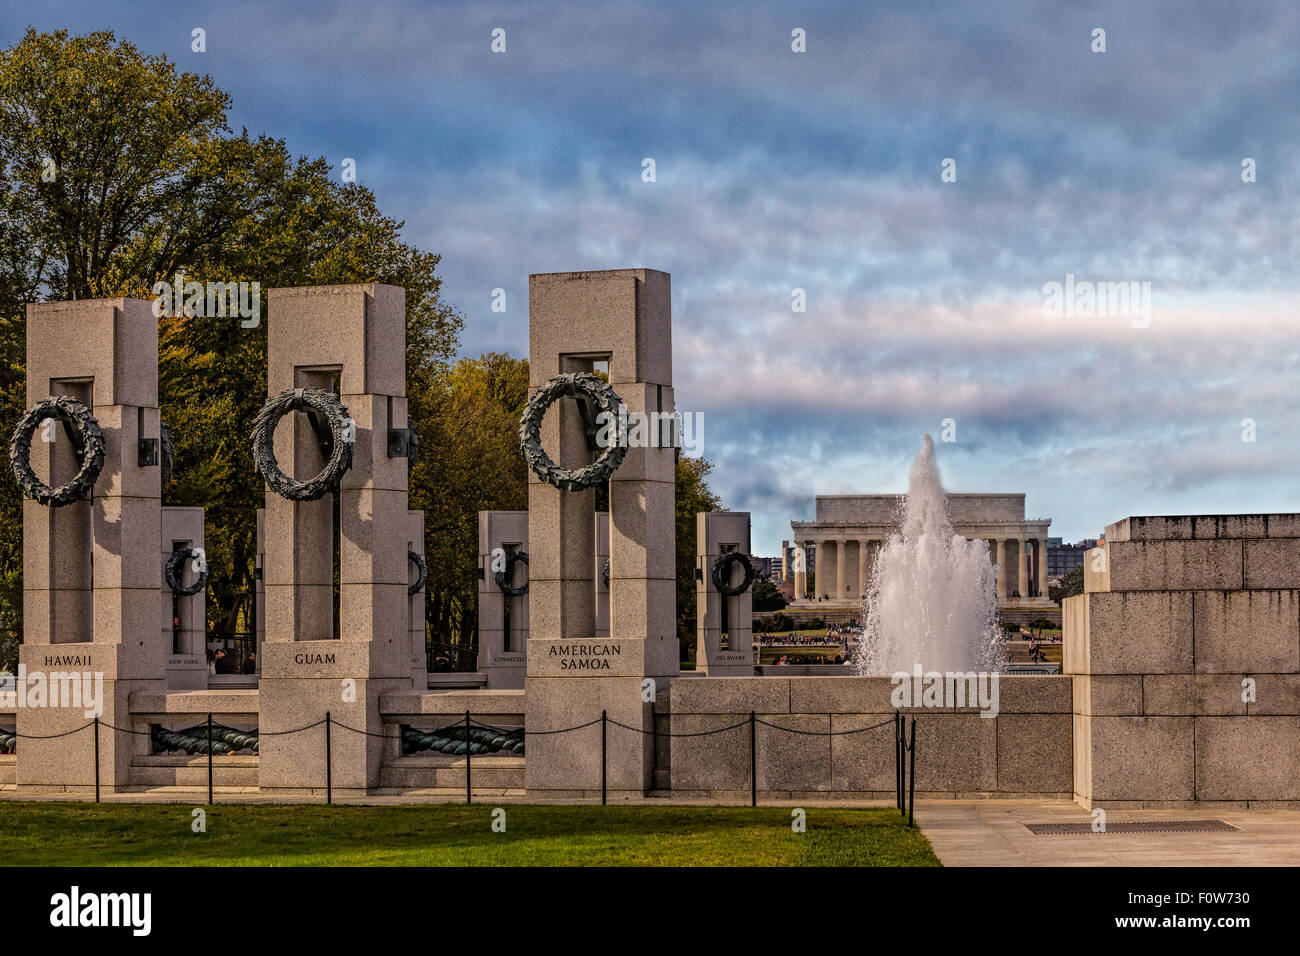 Weltkrieg-II-Denkmal - die National World War II Memorial ist zu Amerikanischen gewidmet, die in den Streitkräften gedient und als Zivilisten während des Zweiten Weltkrieges. Es war der ehemalige Präsident George W. Bush im Jahr 2004 gewidmet. Zu sehen sind einige der 56 Säulen, der Springbrunnen und das Lincoln Memorial im Hintergrund. Stockfoto